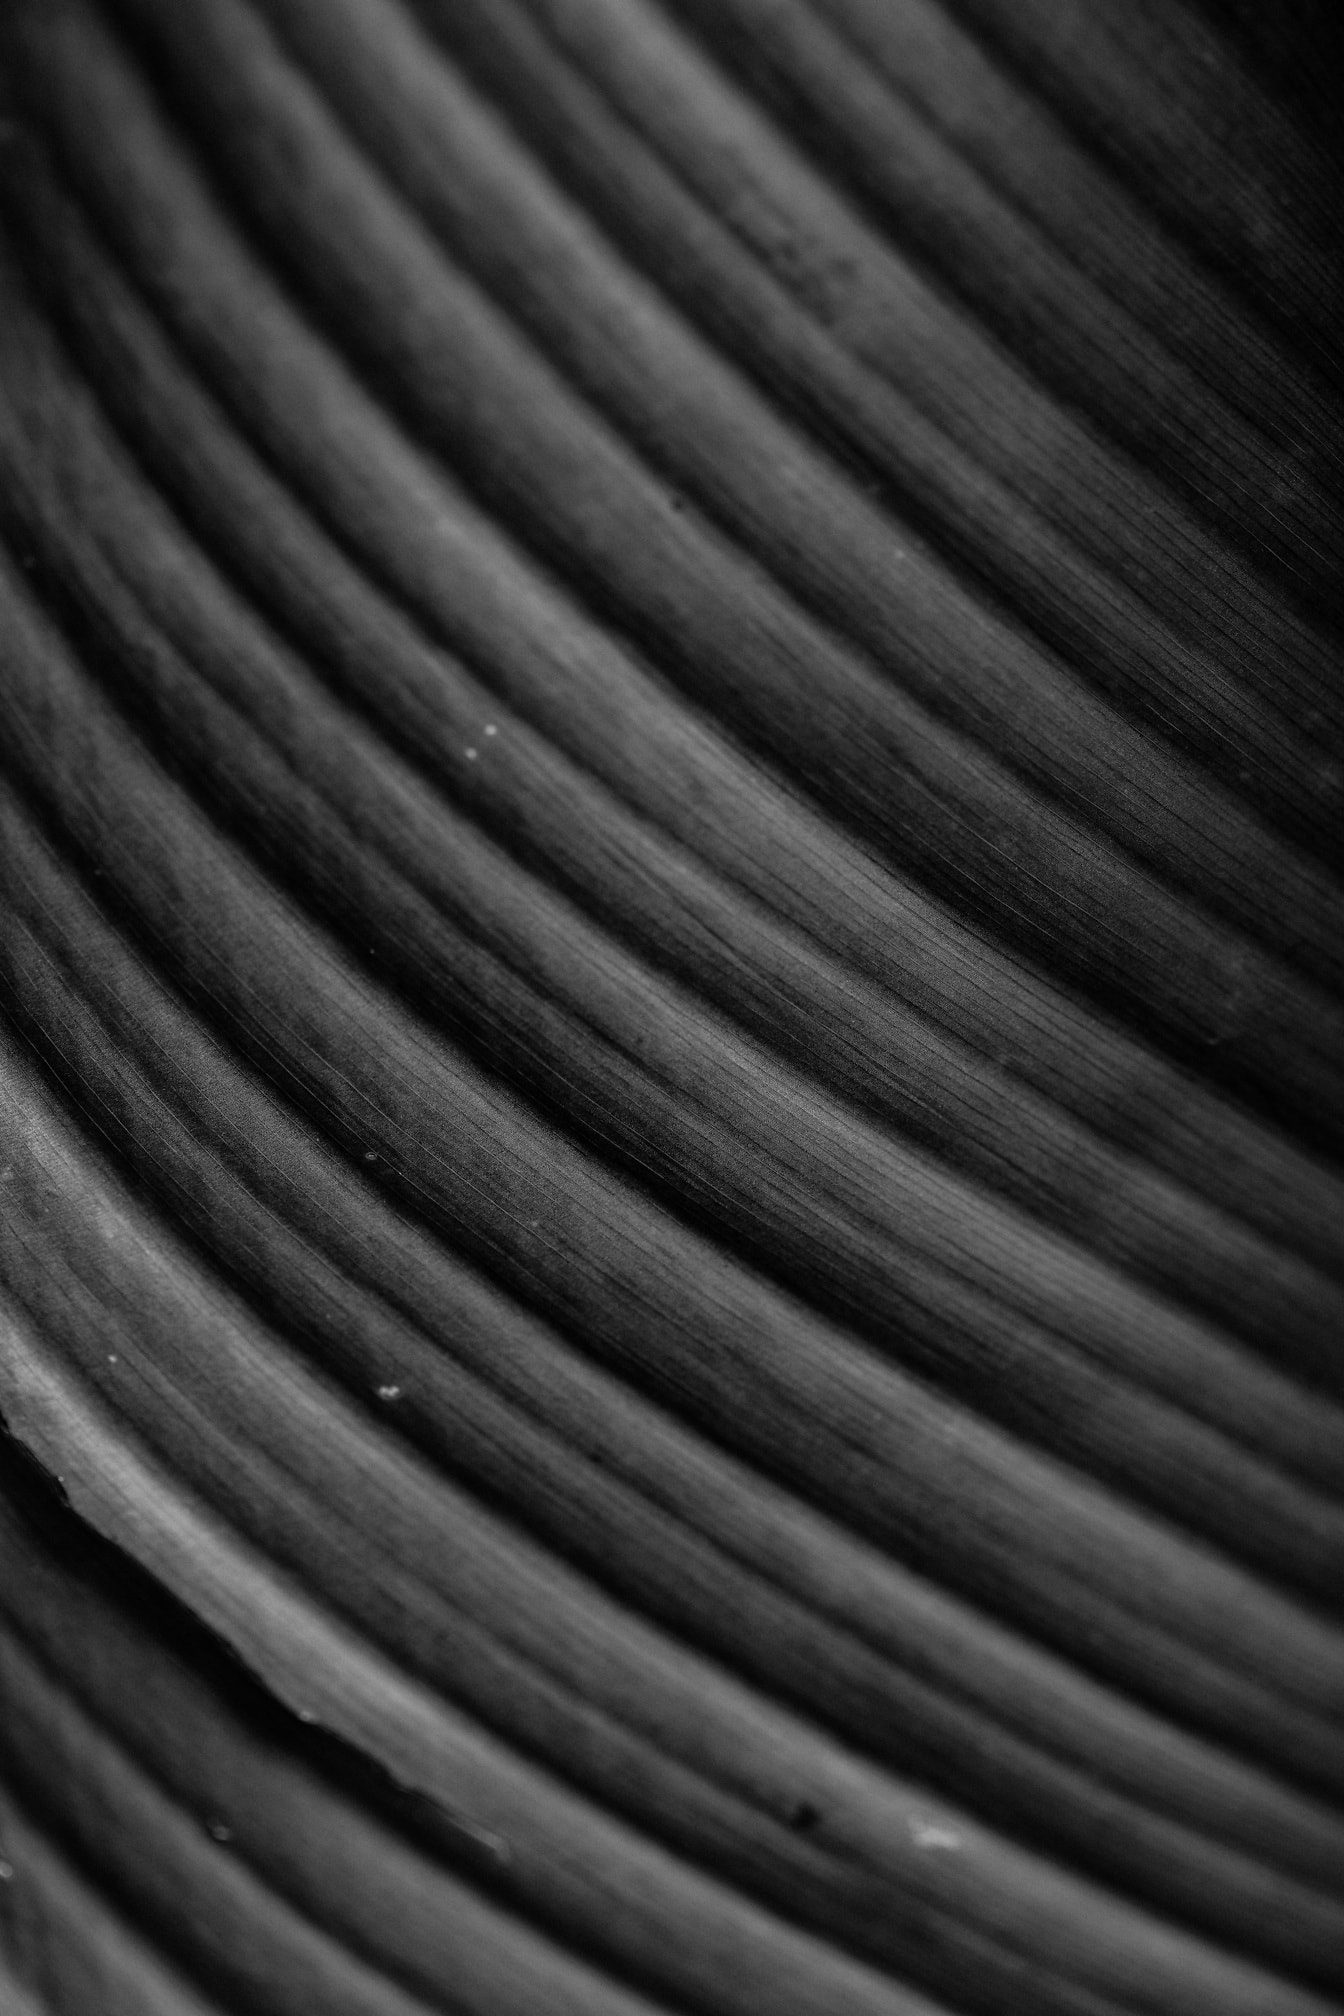 Textura macro em preto e branco de linhas de fibras curvas